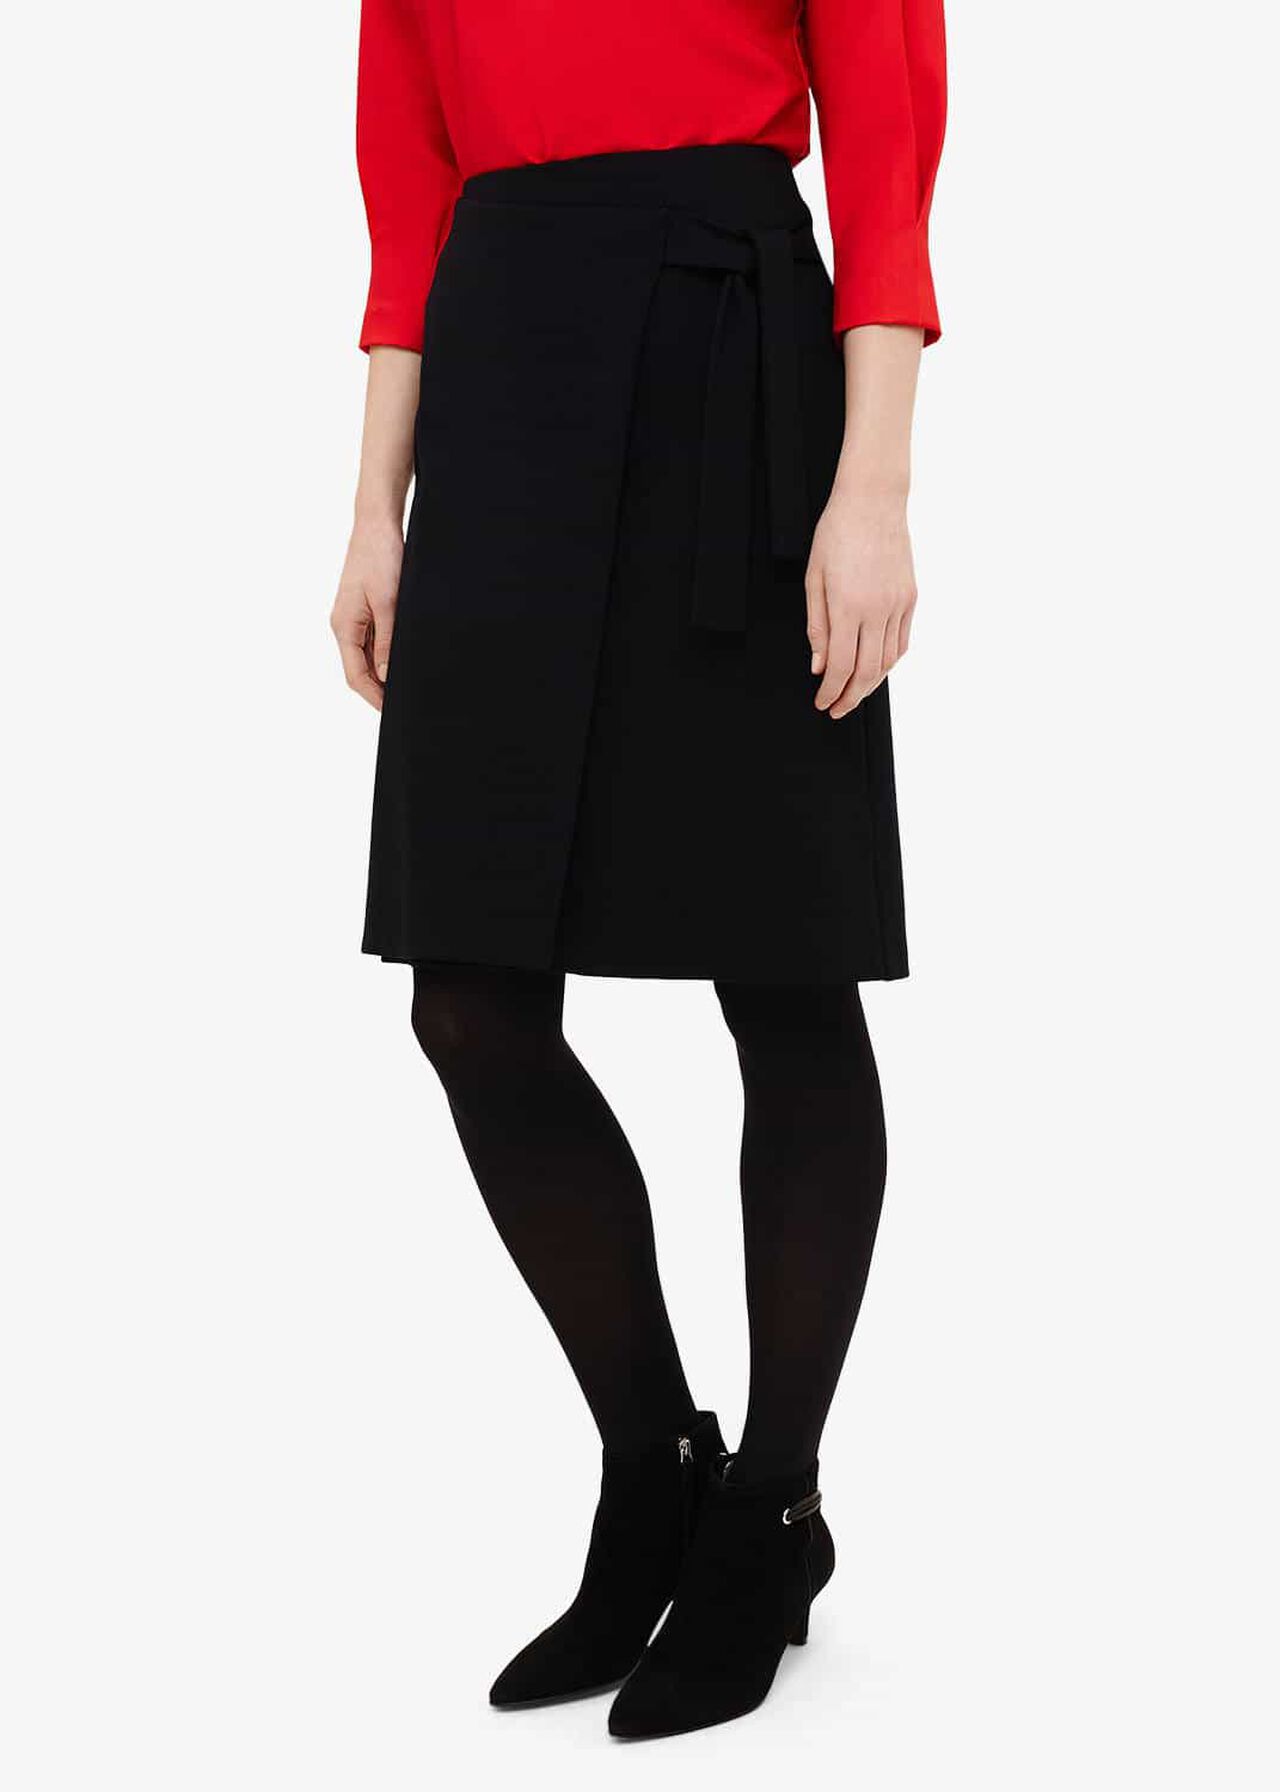 Emeraude Cross Front Skirt